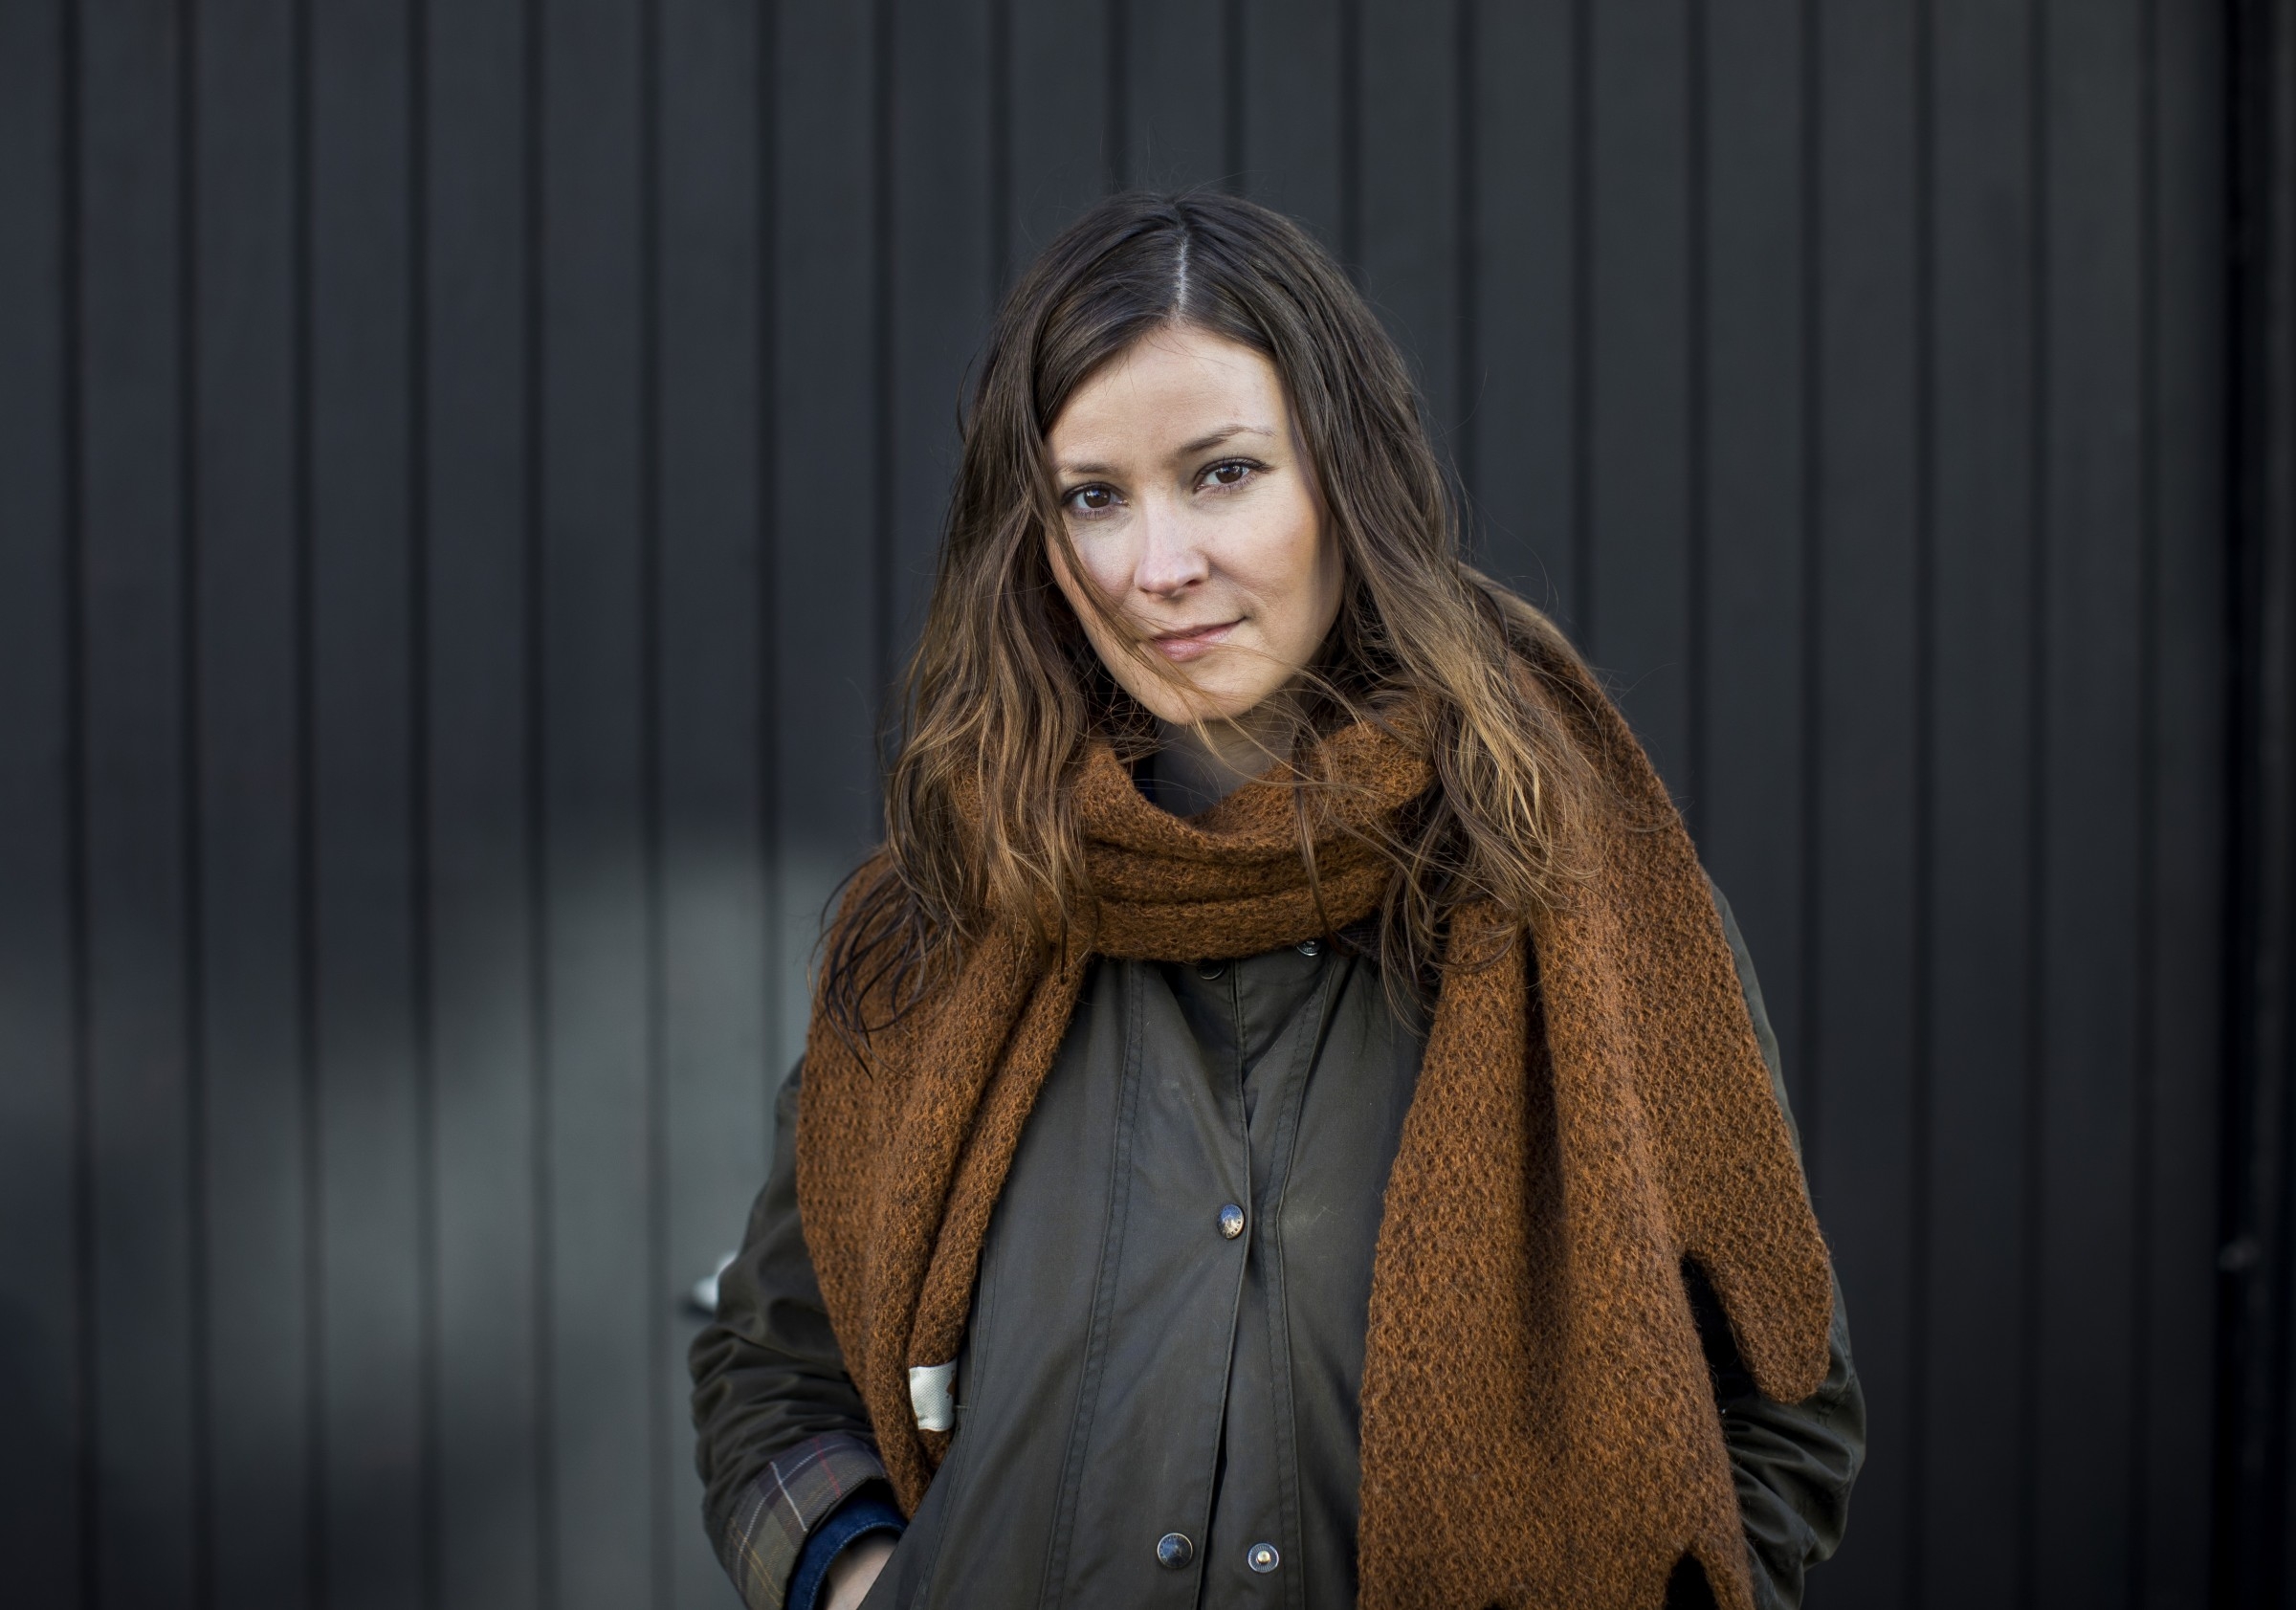 Grad Film Student Anna Gunndís Guðmundsdóttir